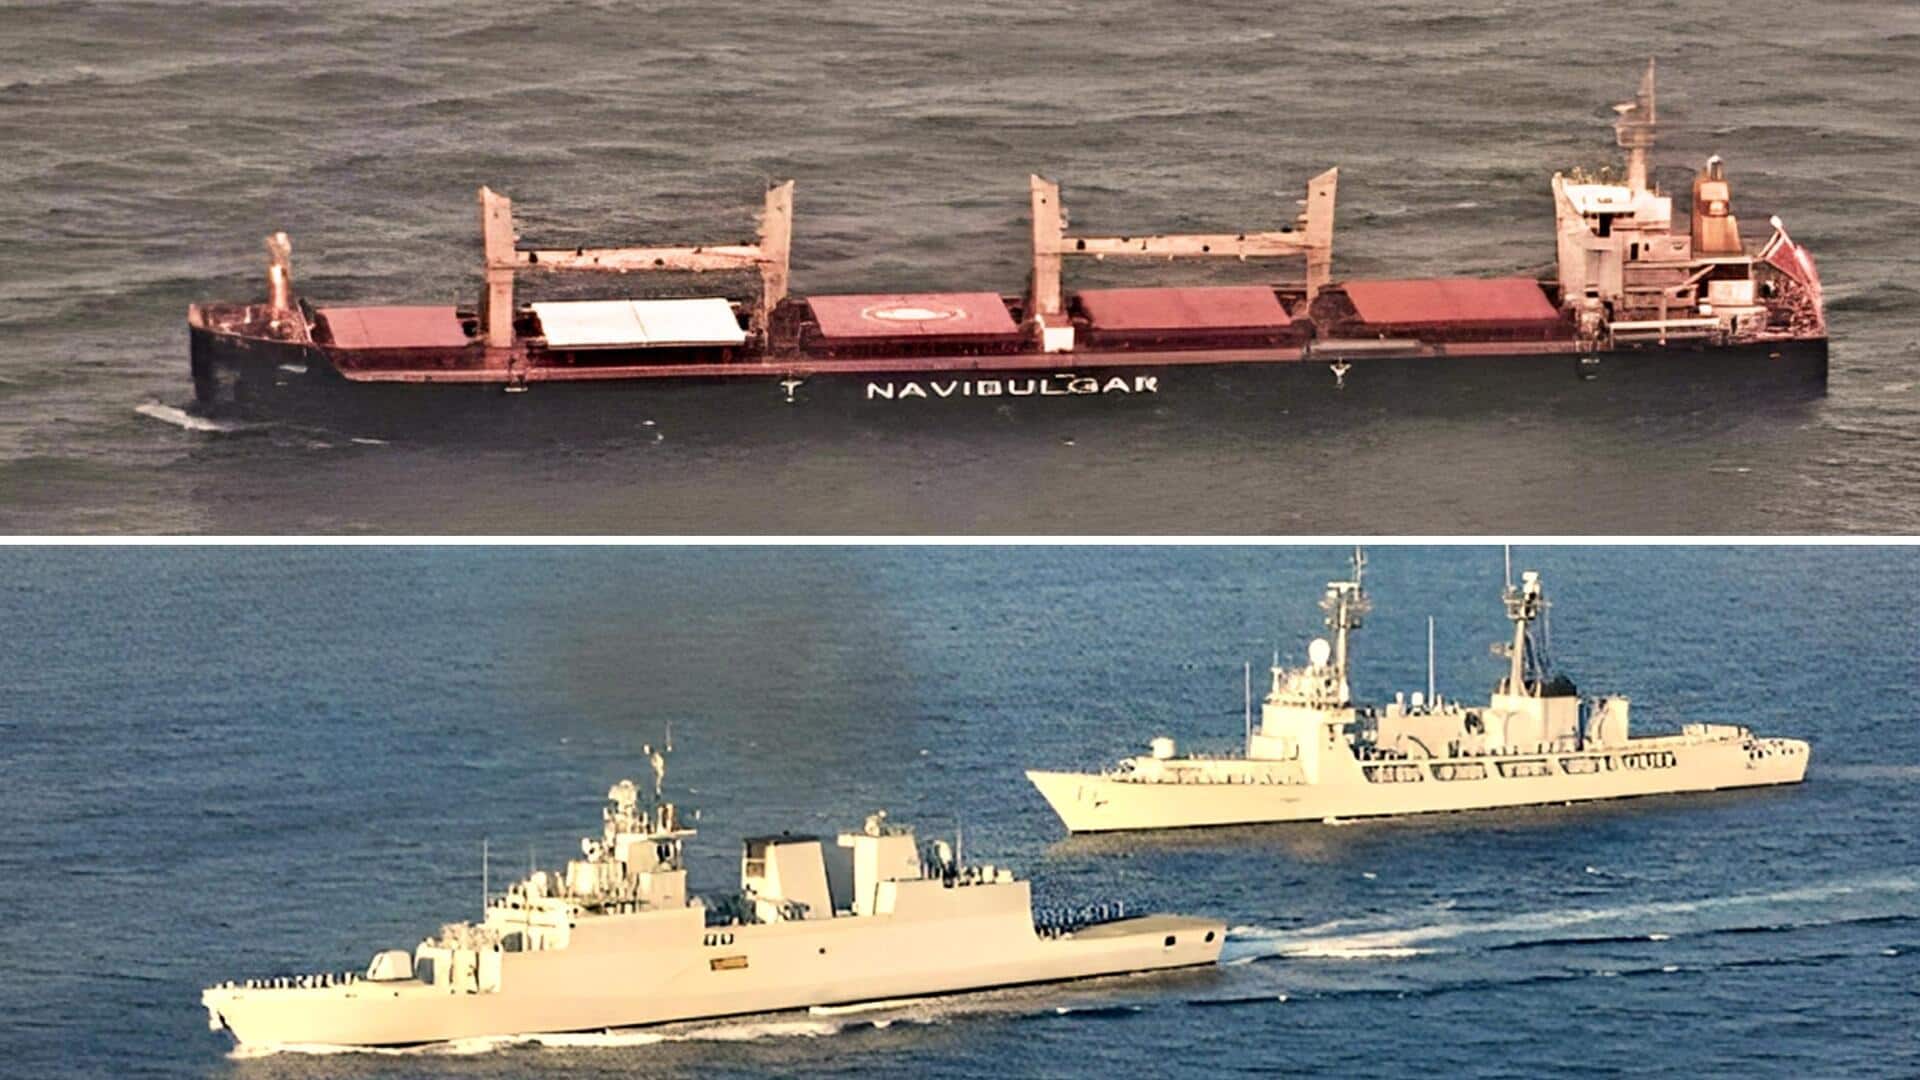 भारतीय नौसेना ने अरब सागर में माल्टा जहाज के अपहरण के प्रयास का दिया जवाब